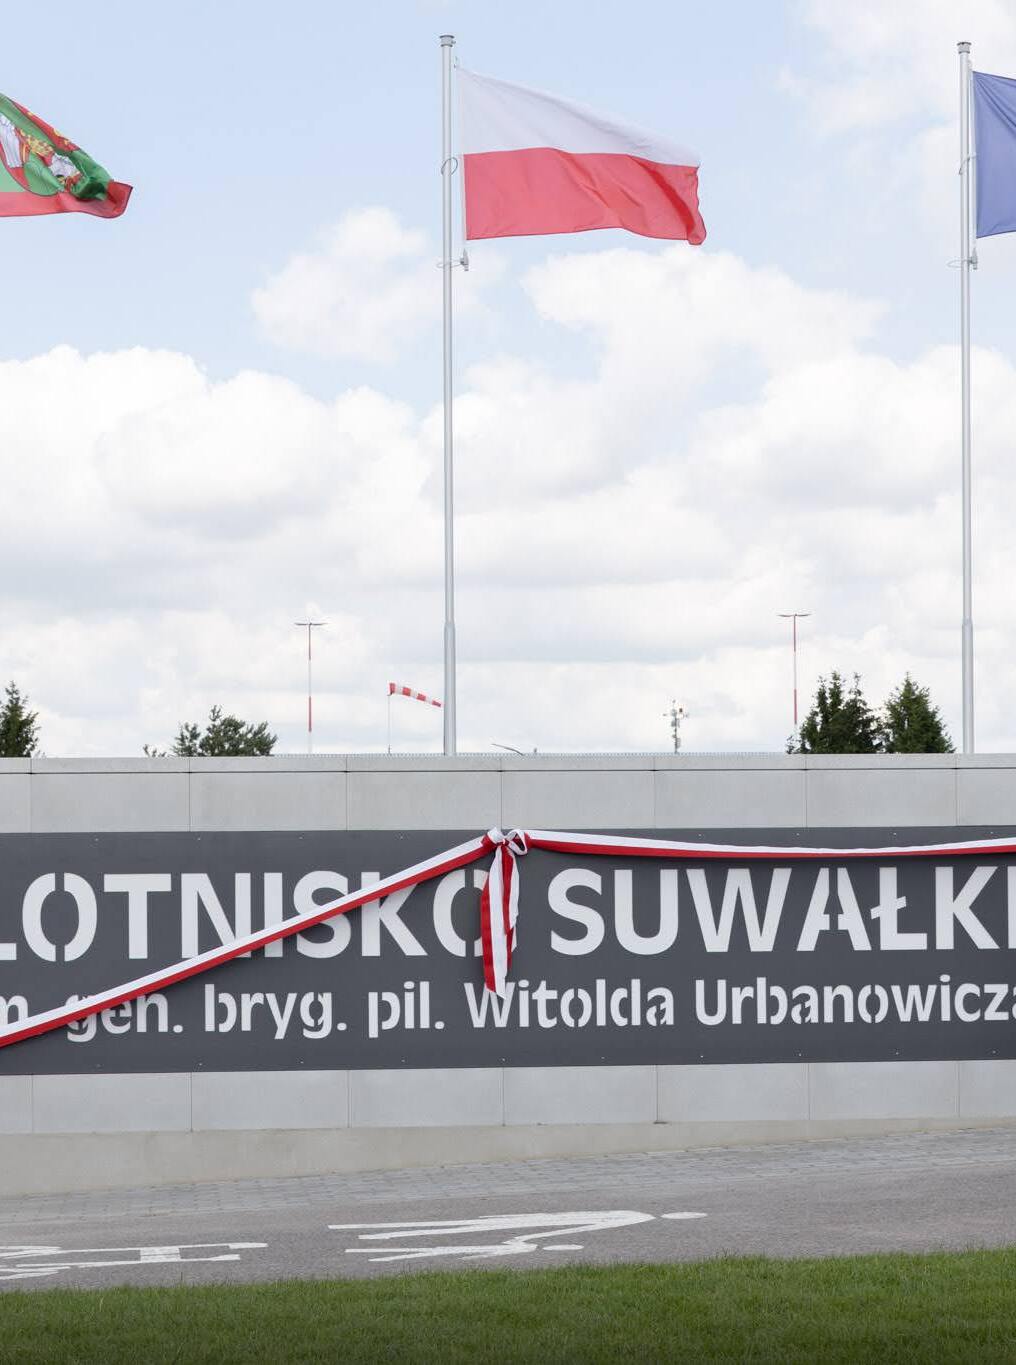 Lotnisko w Suwałkach będzie nosiło imię gen. bryg. pil. Witolda Urbanowicza